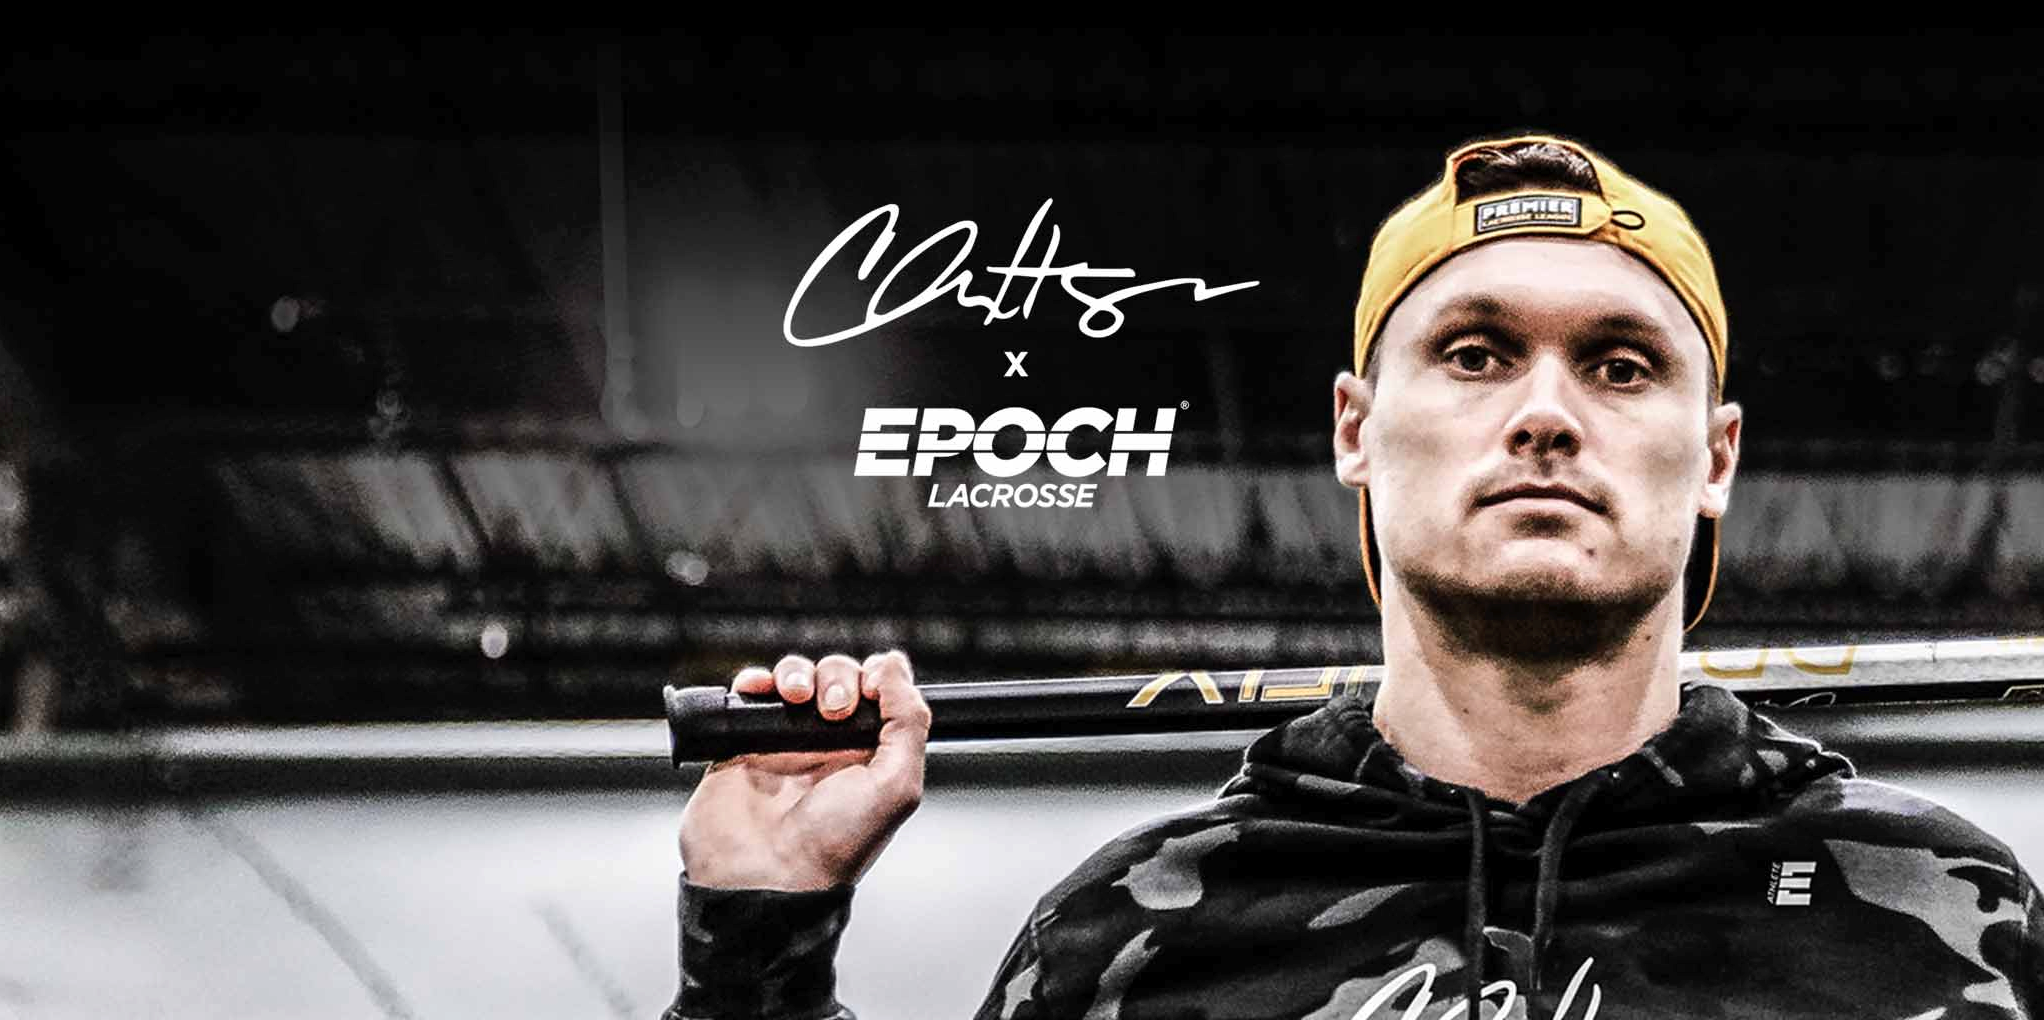 Epoch Lacrosse Signs Two-time Super Bowl Champion and Premier Lacrosse League Player Chris Hogan